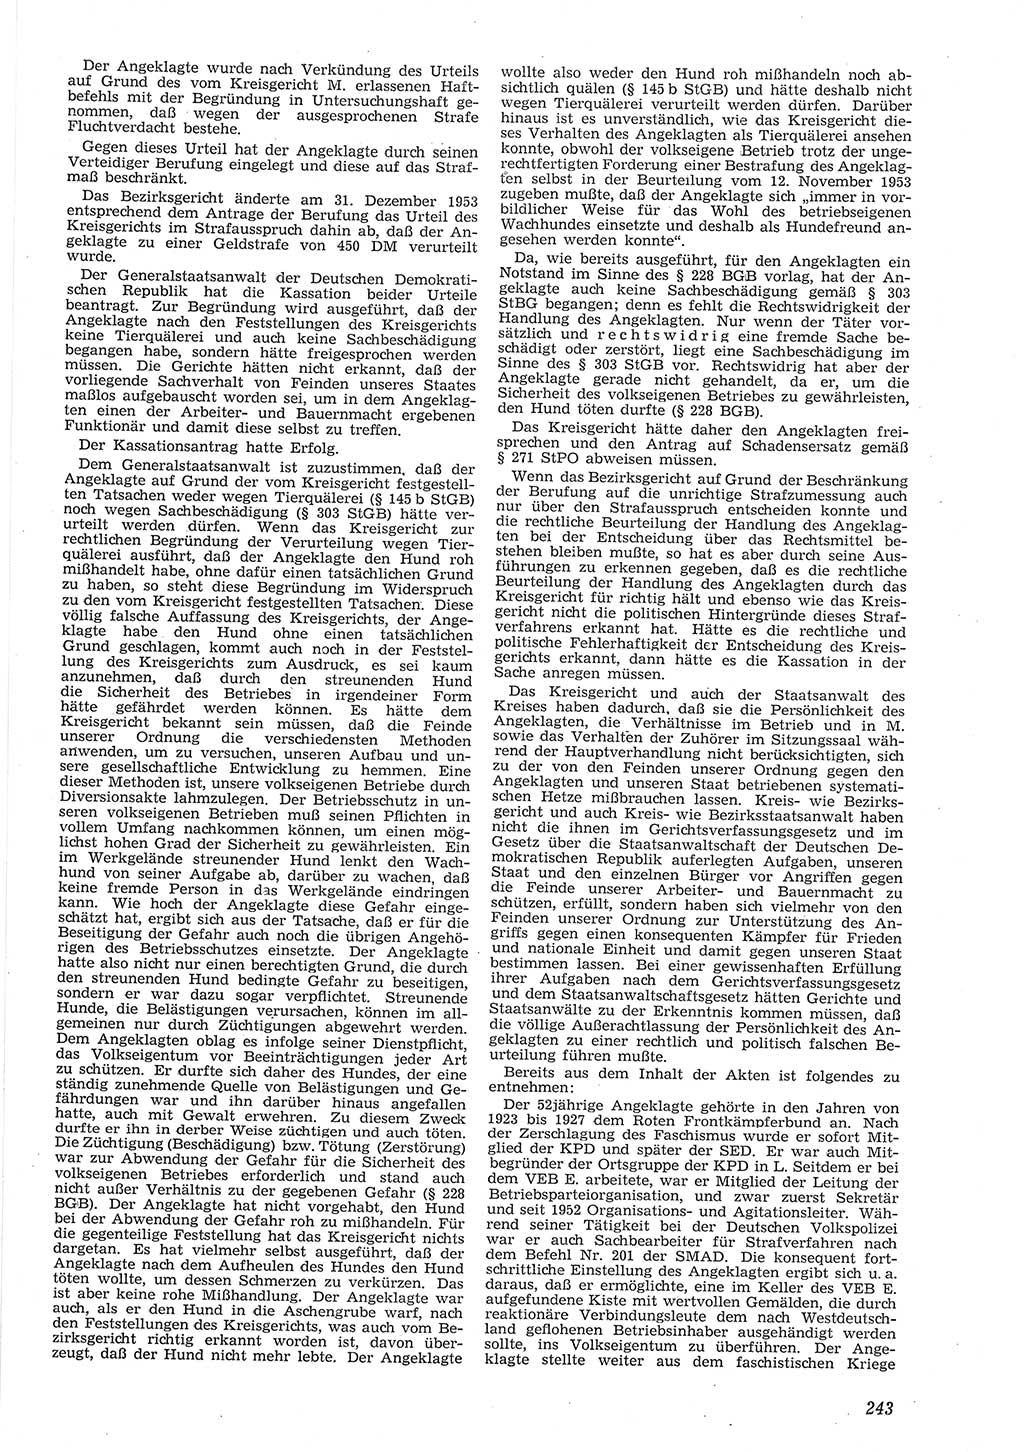 Neue Justiz (NJ), Zeitschrift für Recht und Rechtswissenschaft [Deutsche Demokratische Republik (DDR)], 8. Jahrgang 1954, Seite 243 (NJ DDR 1954, S. 243)